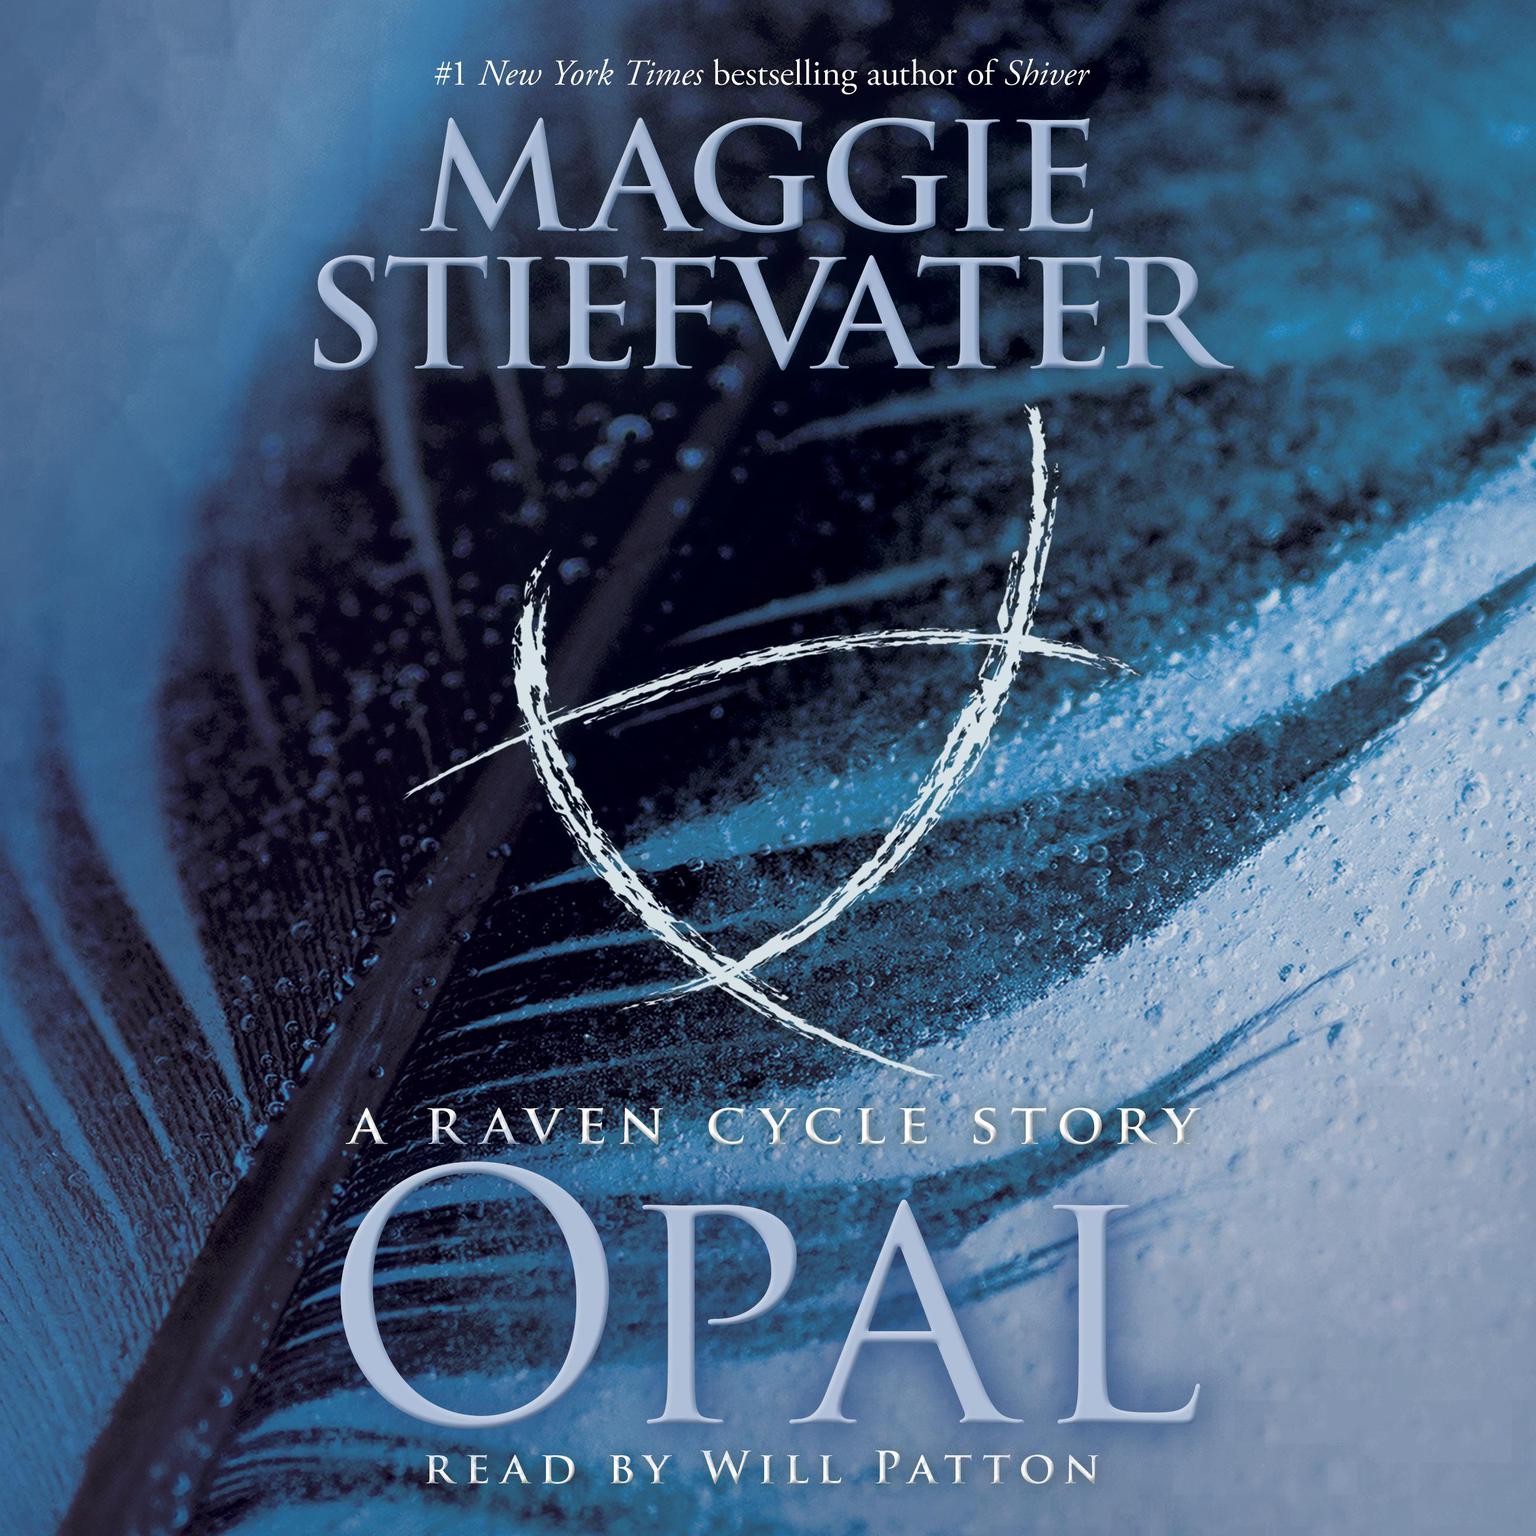 Opal (a Raven Cycle Story): A Raven Cycle Story Audiobook, by Maggie Stiefvater